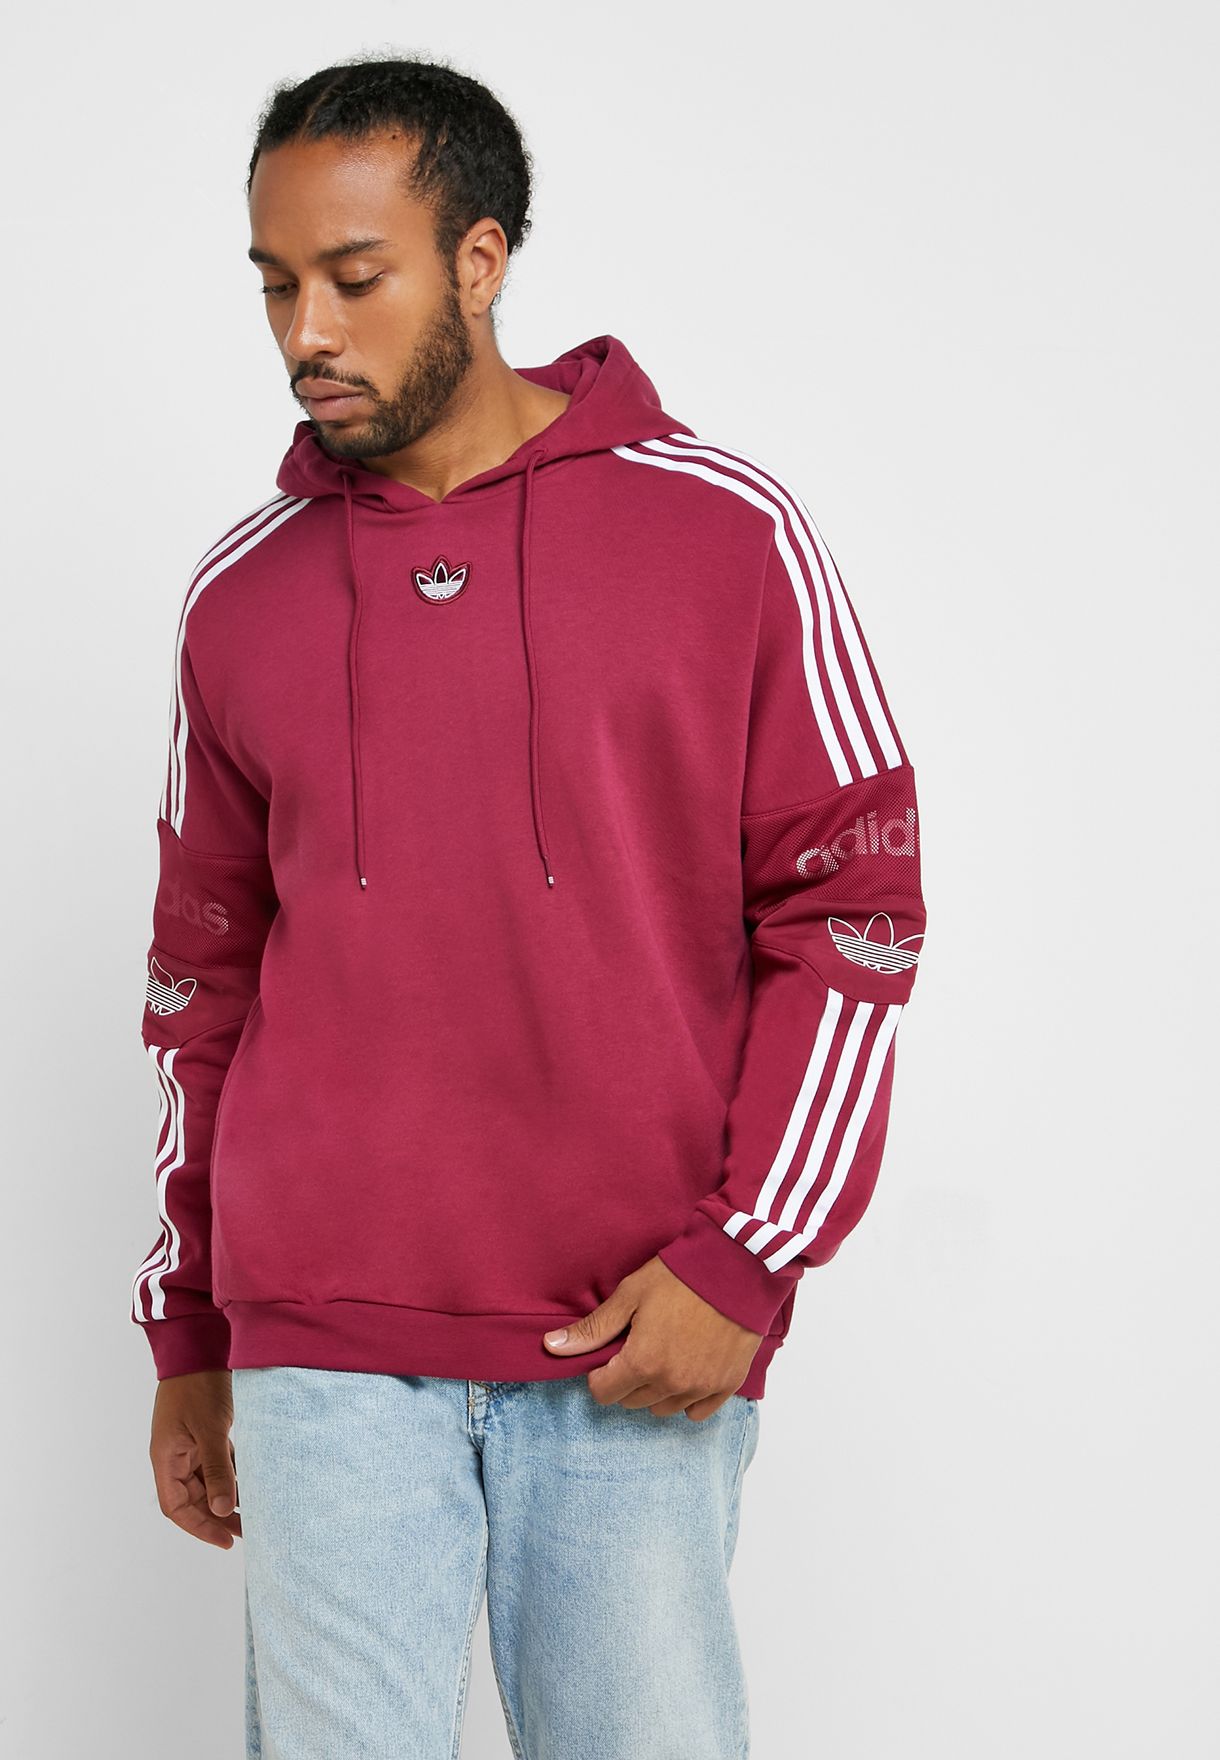 burgundy trefoil hoodie